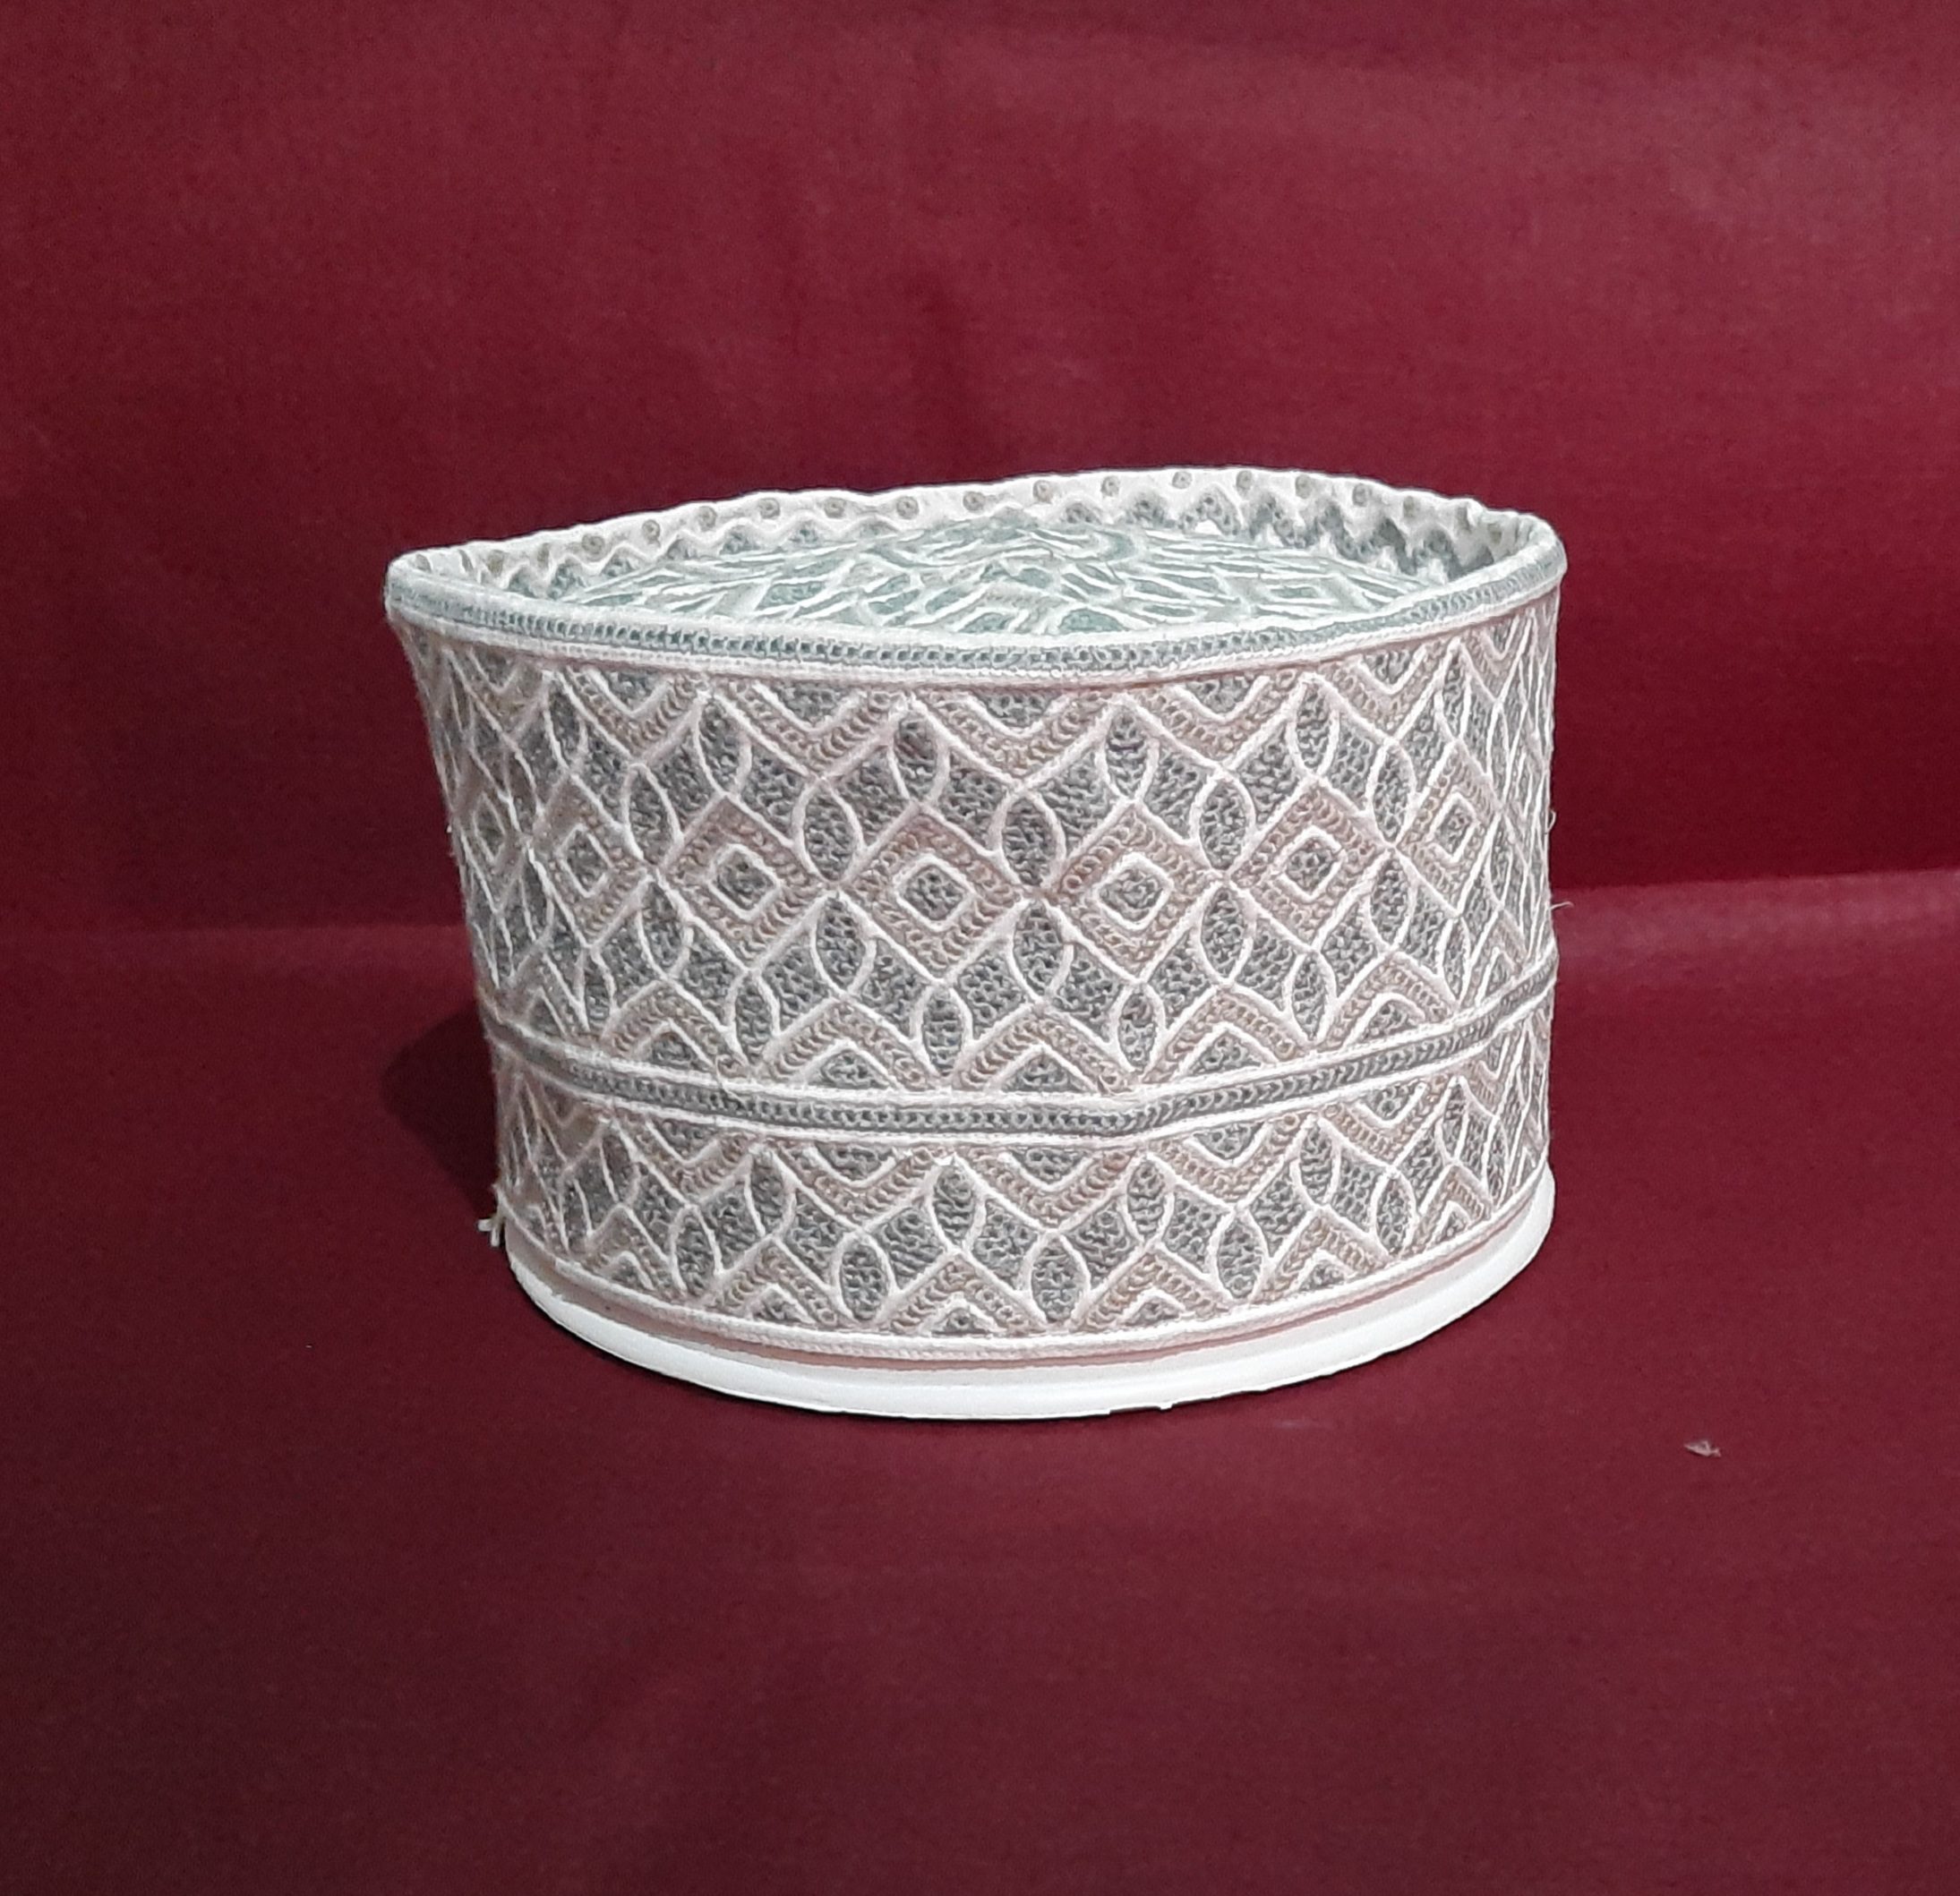 New Original Omani Barkati Cap Soft Cotton Material modal no. 101 Size 21 (Barkati Topi)